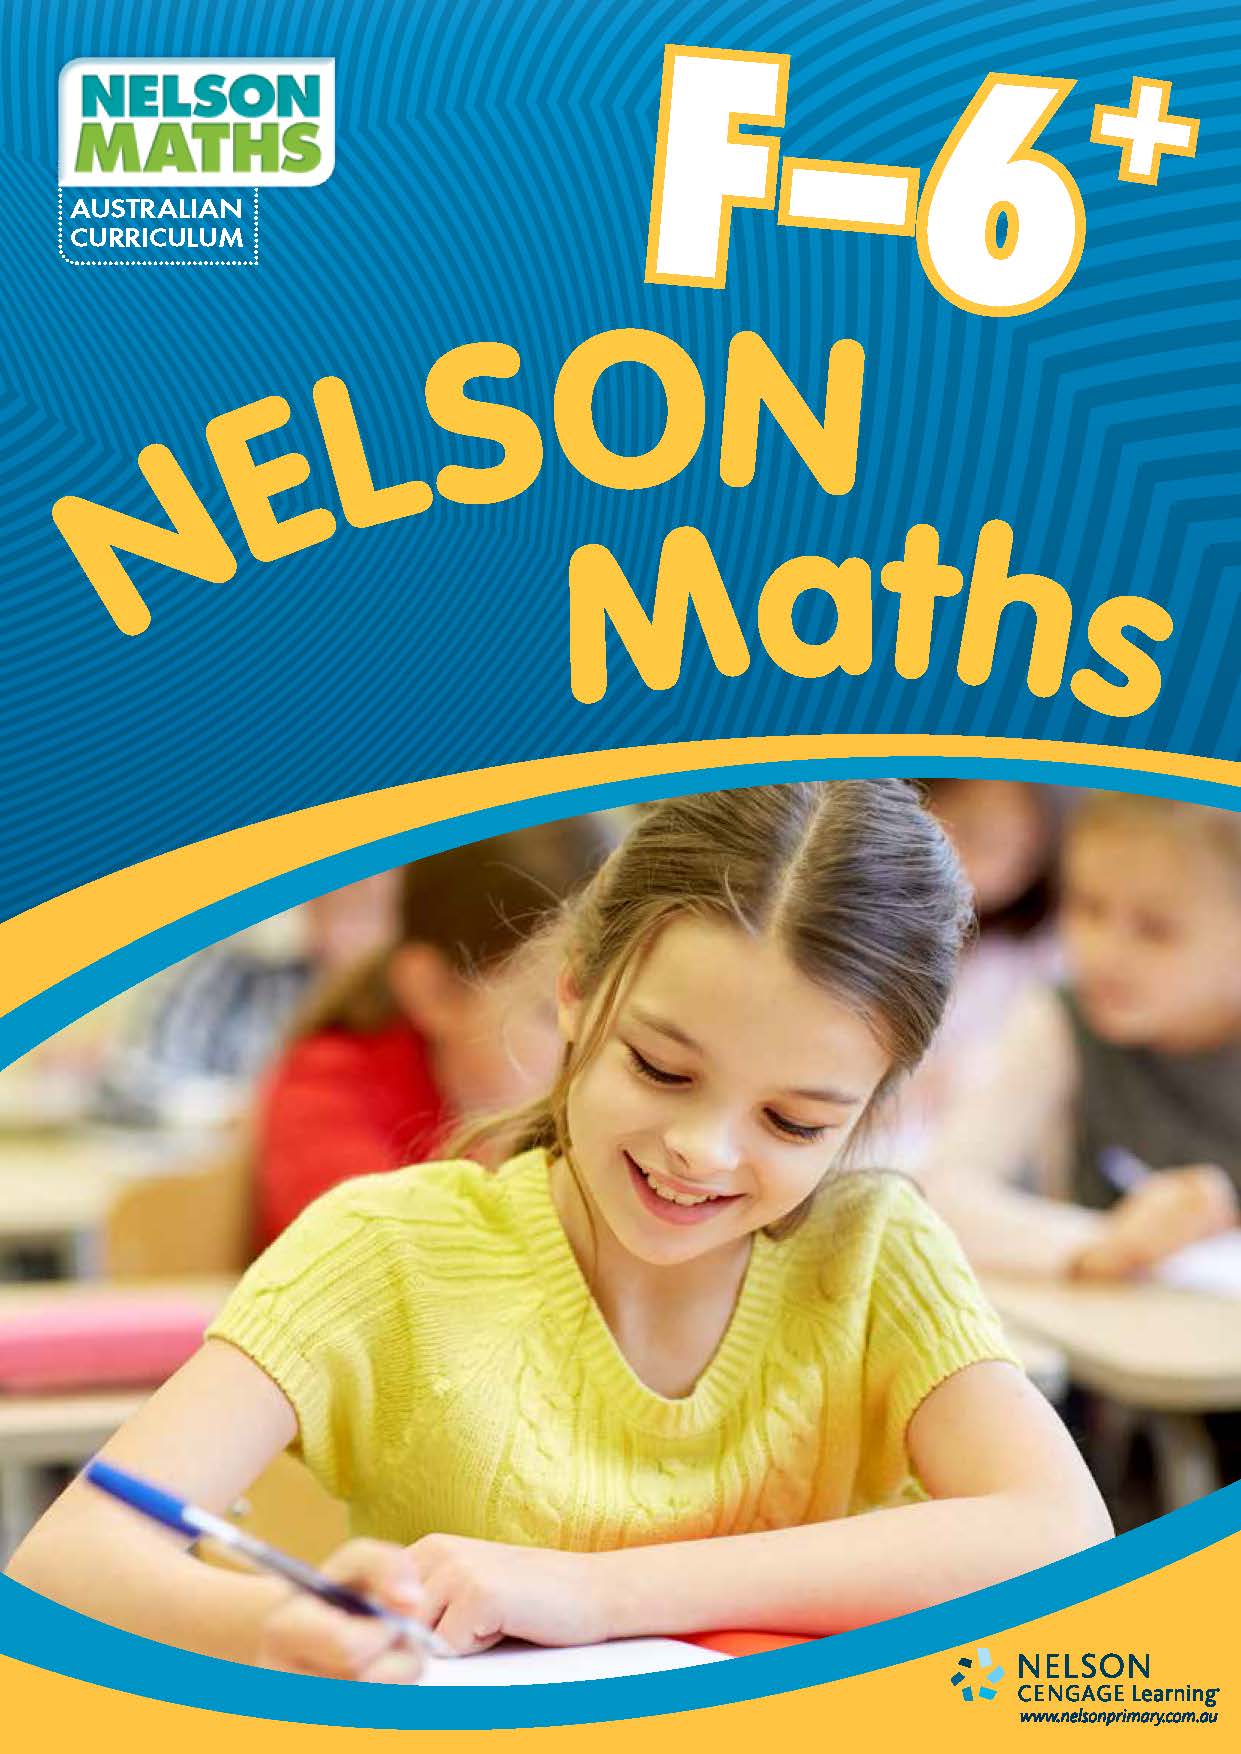 Nelson Maths AC F-6 brochure